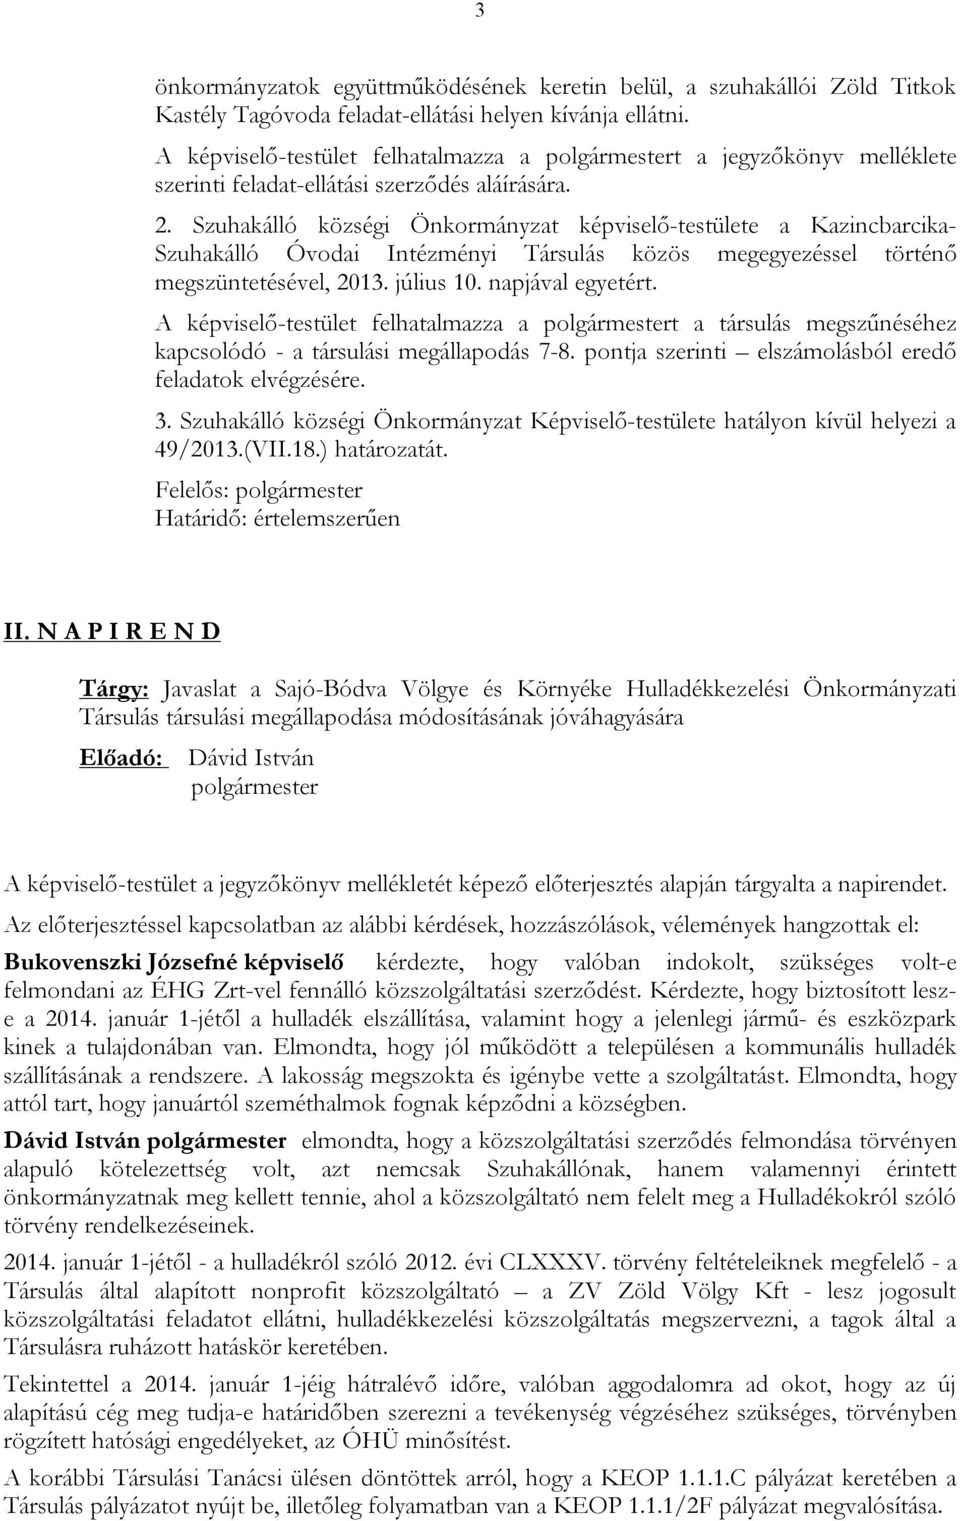 Szuhakálló községi Önkormányzat képviselő-testülete a Kazincbarcika- Szuhakálló Óvodai Intézményi Társulás közös megegyezéssel történő megszüntetésével, 2013. július 10. napjával egyetért.